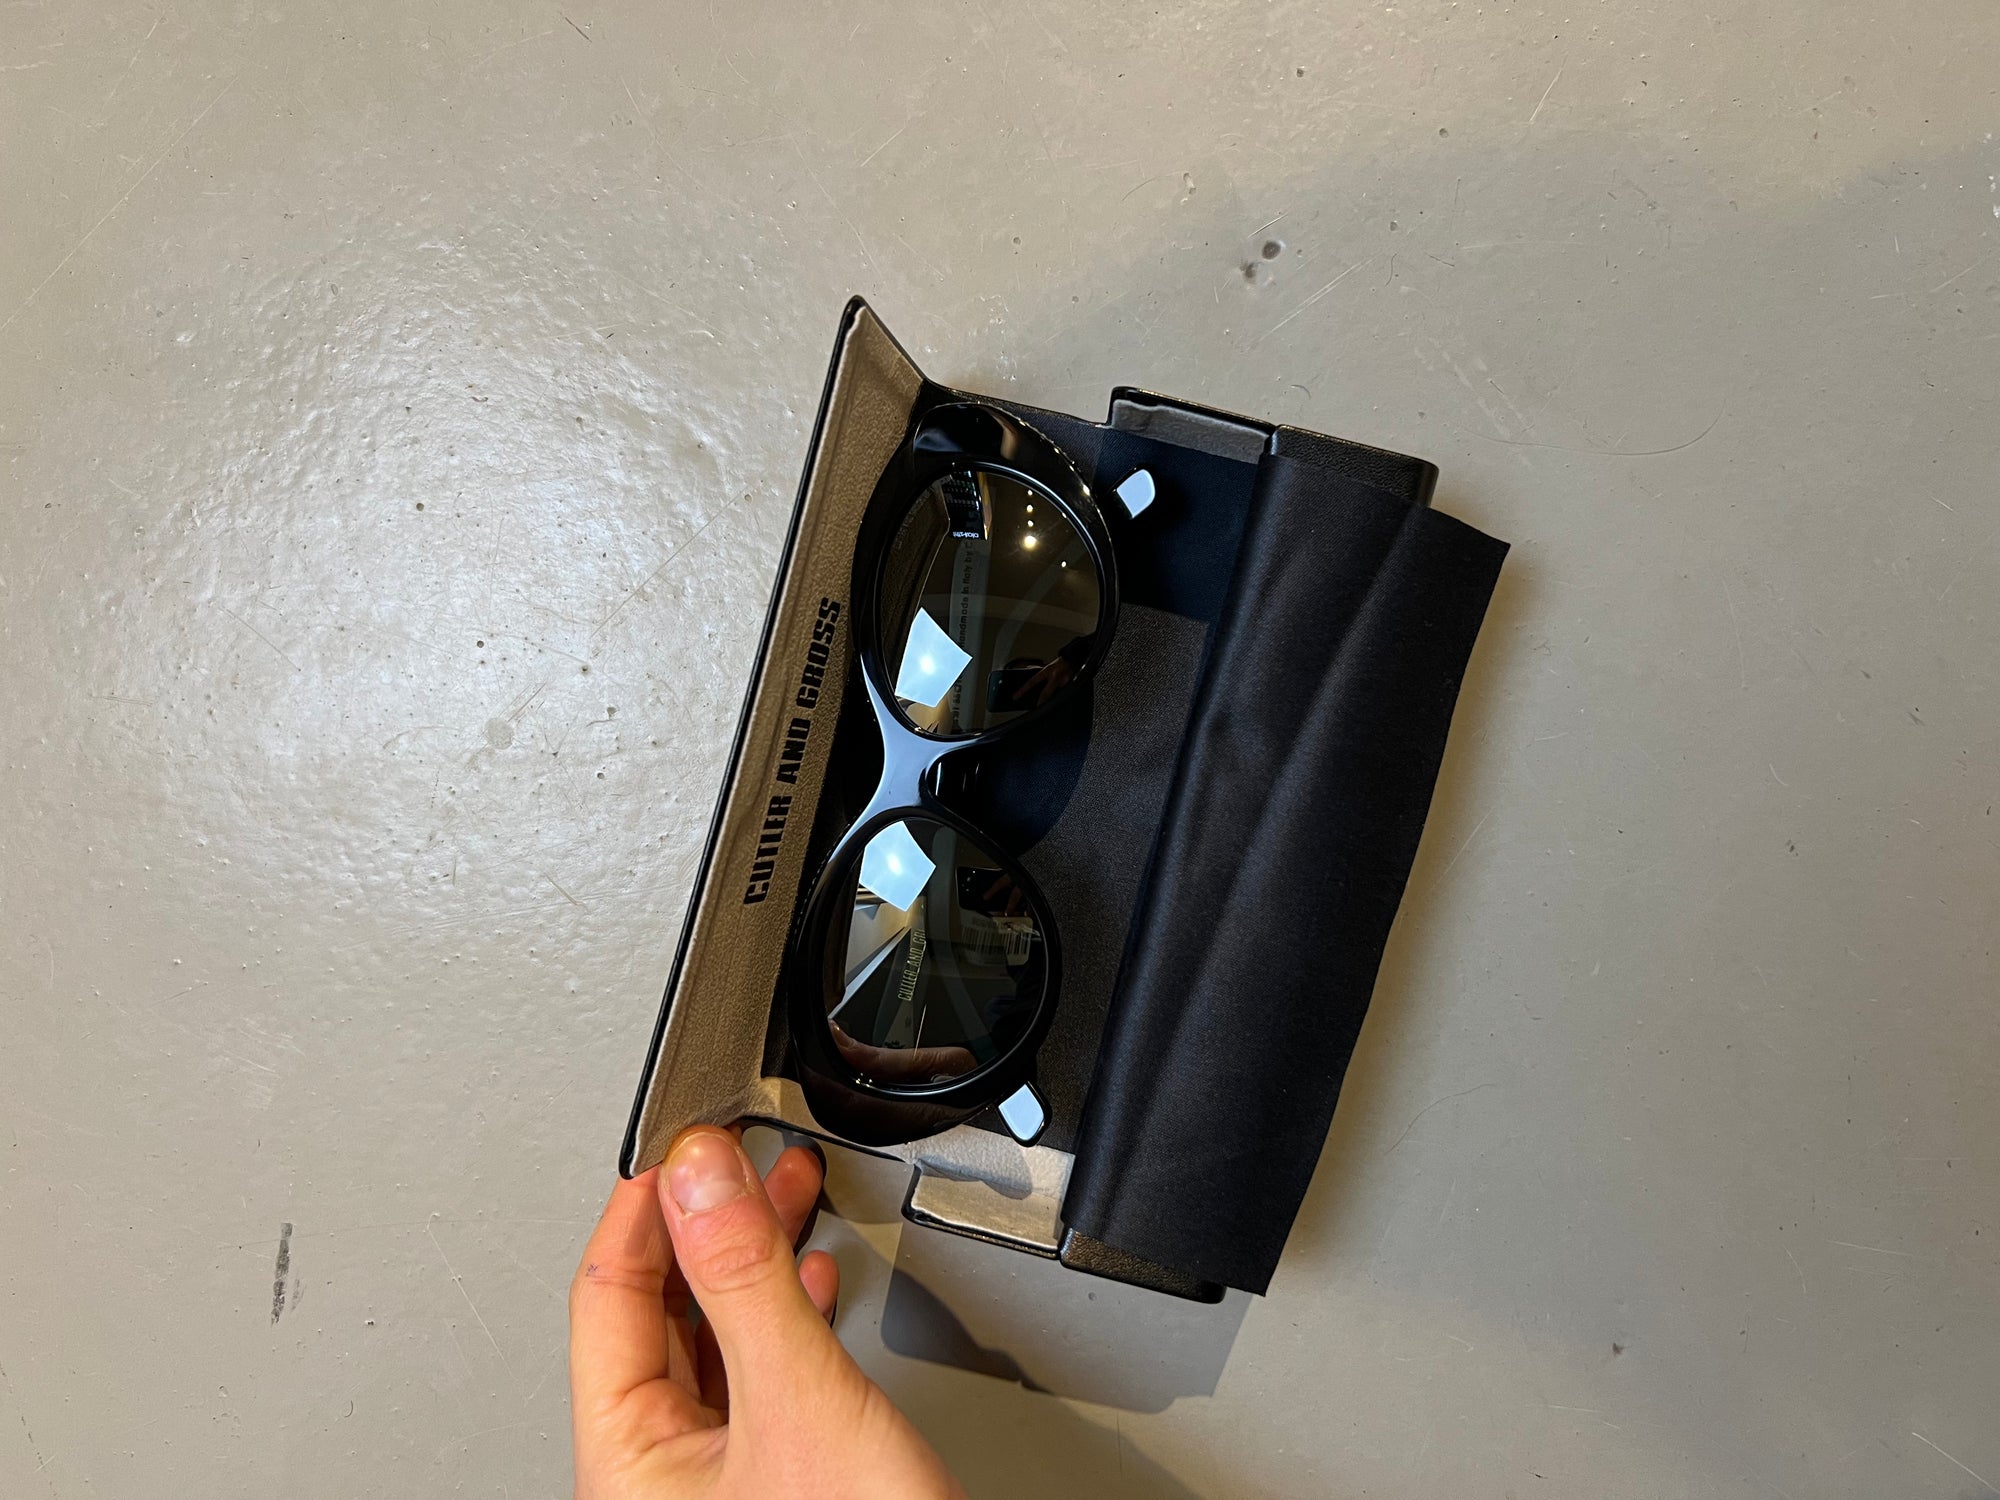 Produktbild der Cutler and Gross Sunglasses Black Glitter von oben mit Case vor grauem Hintergrund.